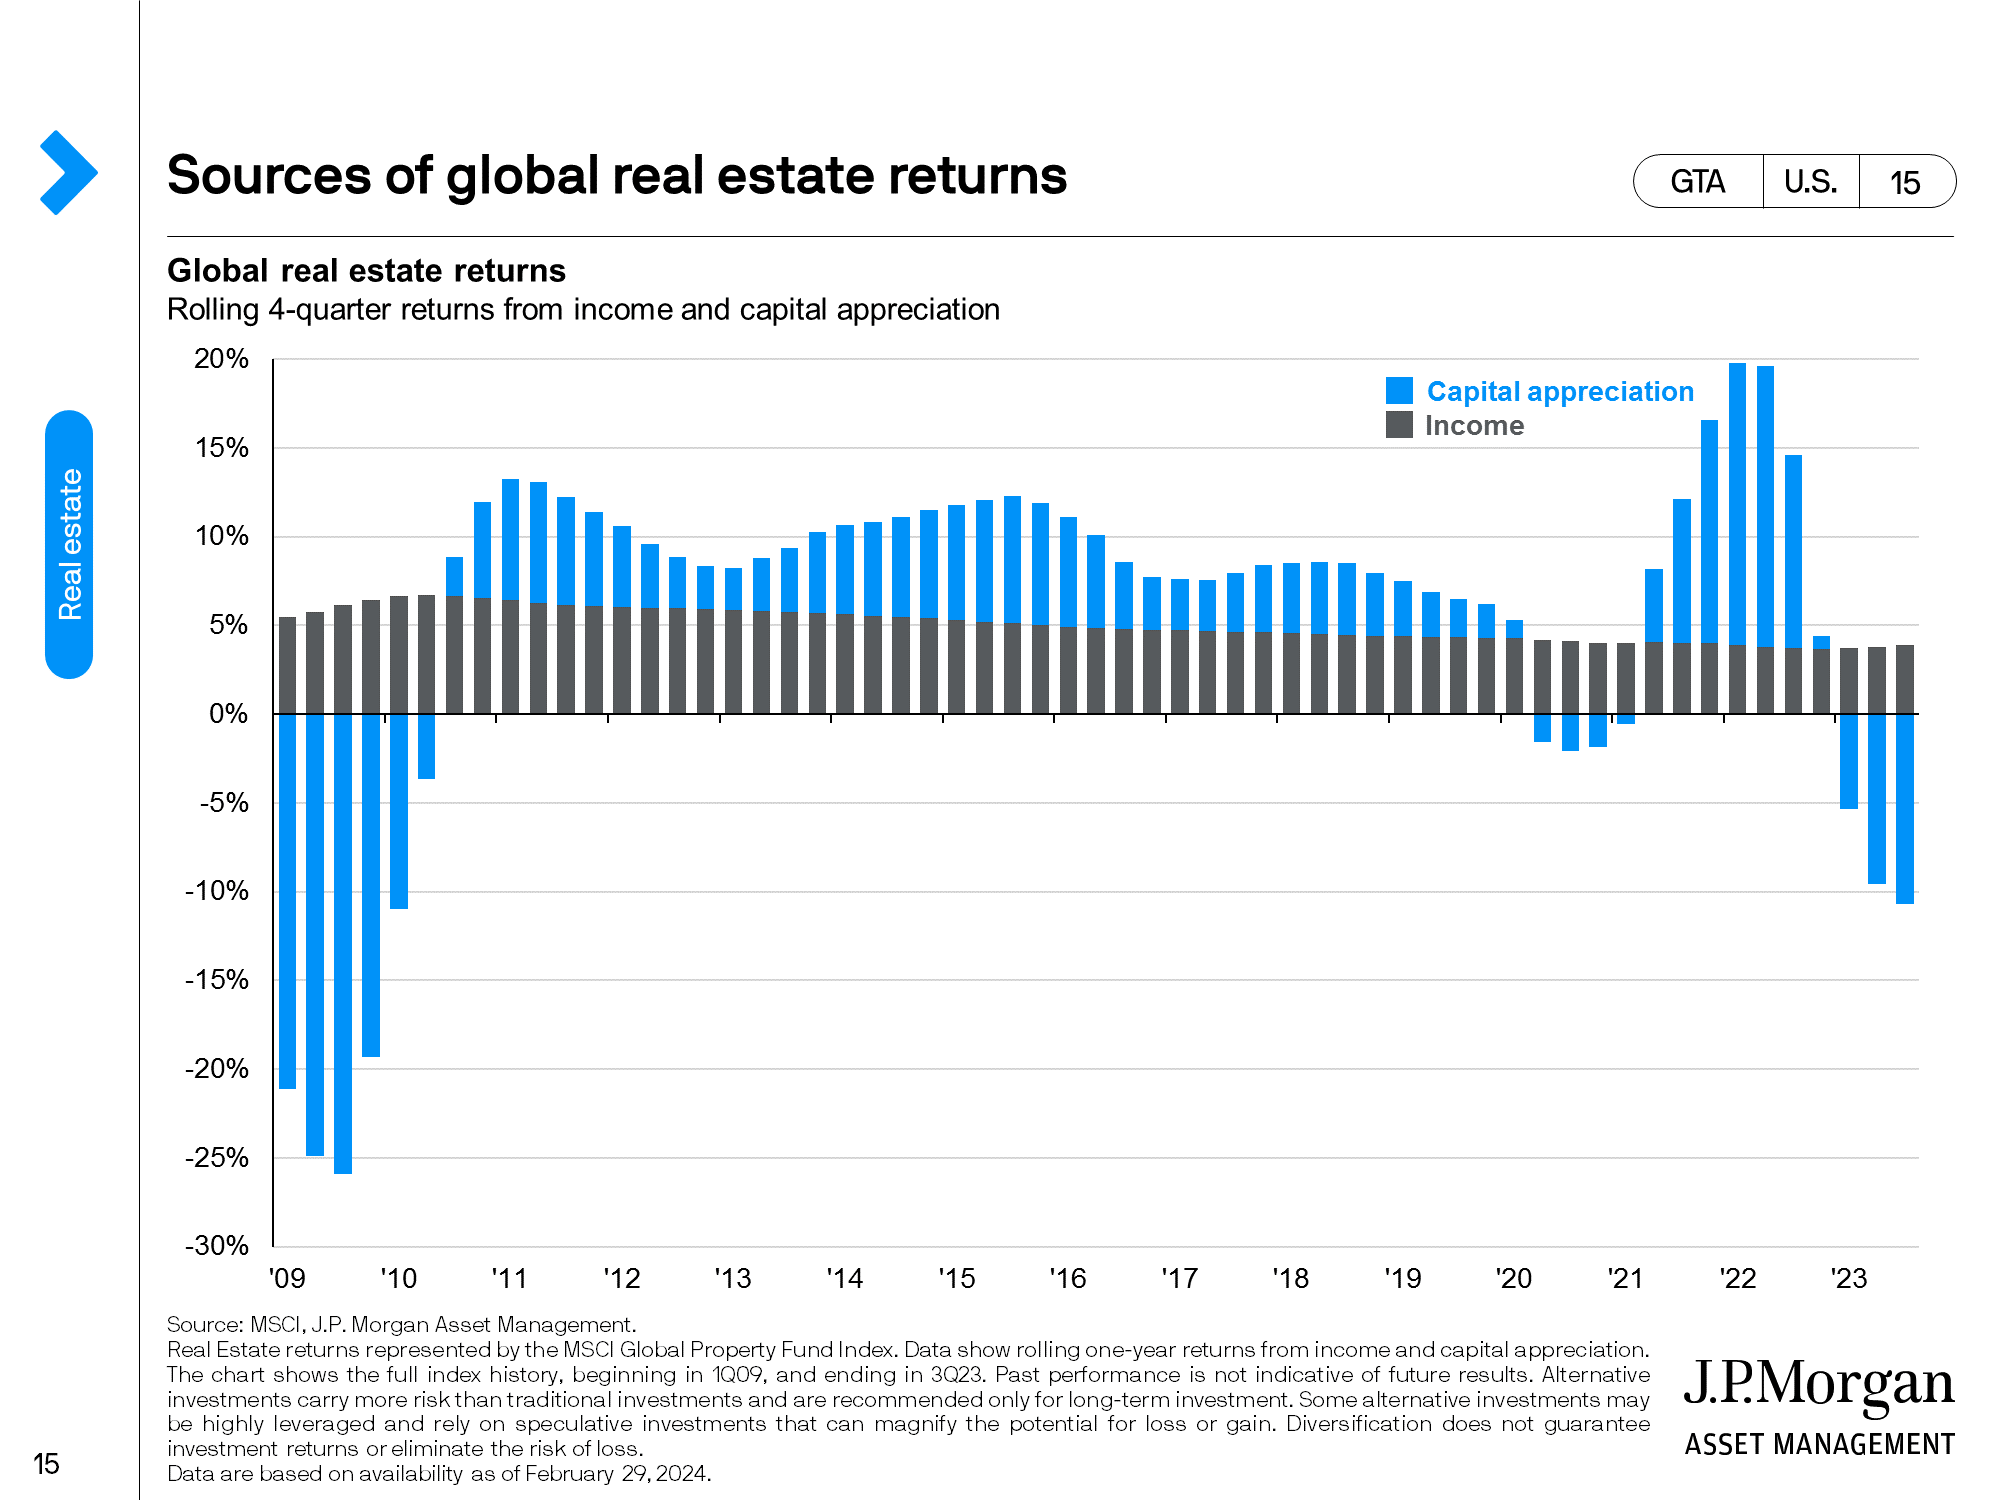 U.S. real estate: Retail 